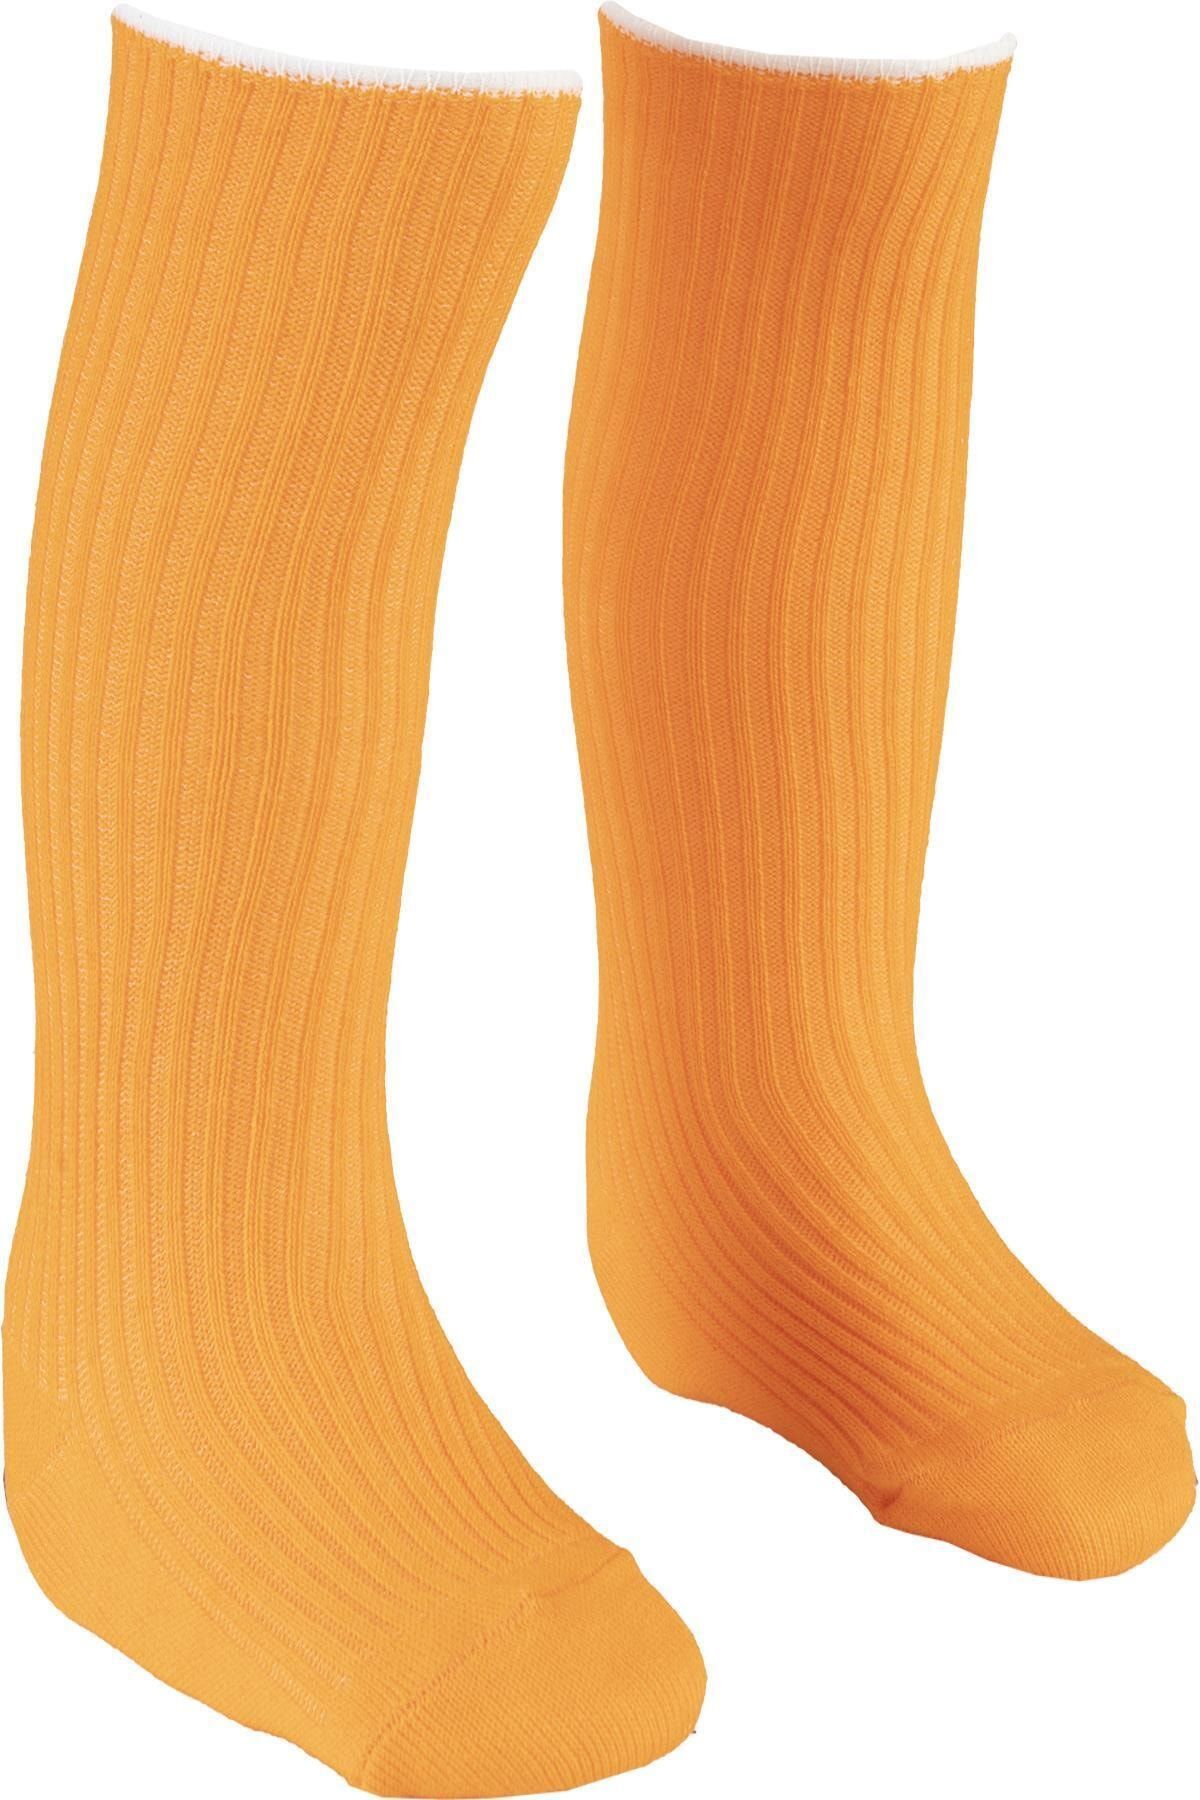 BEBEĞİME ÇORAP Dizaltı Çorap 1-2 Yaş Kız-erkek Bebek / Kız- Erkek Çocuk -turuncu